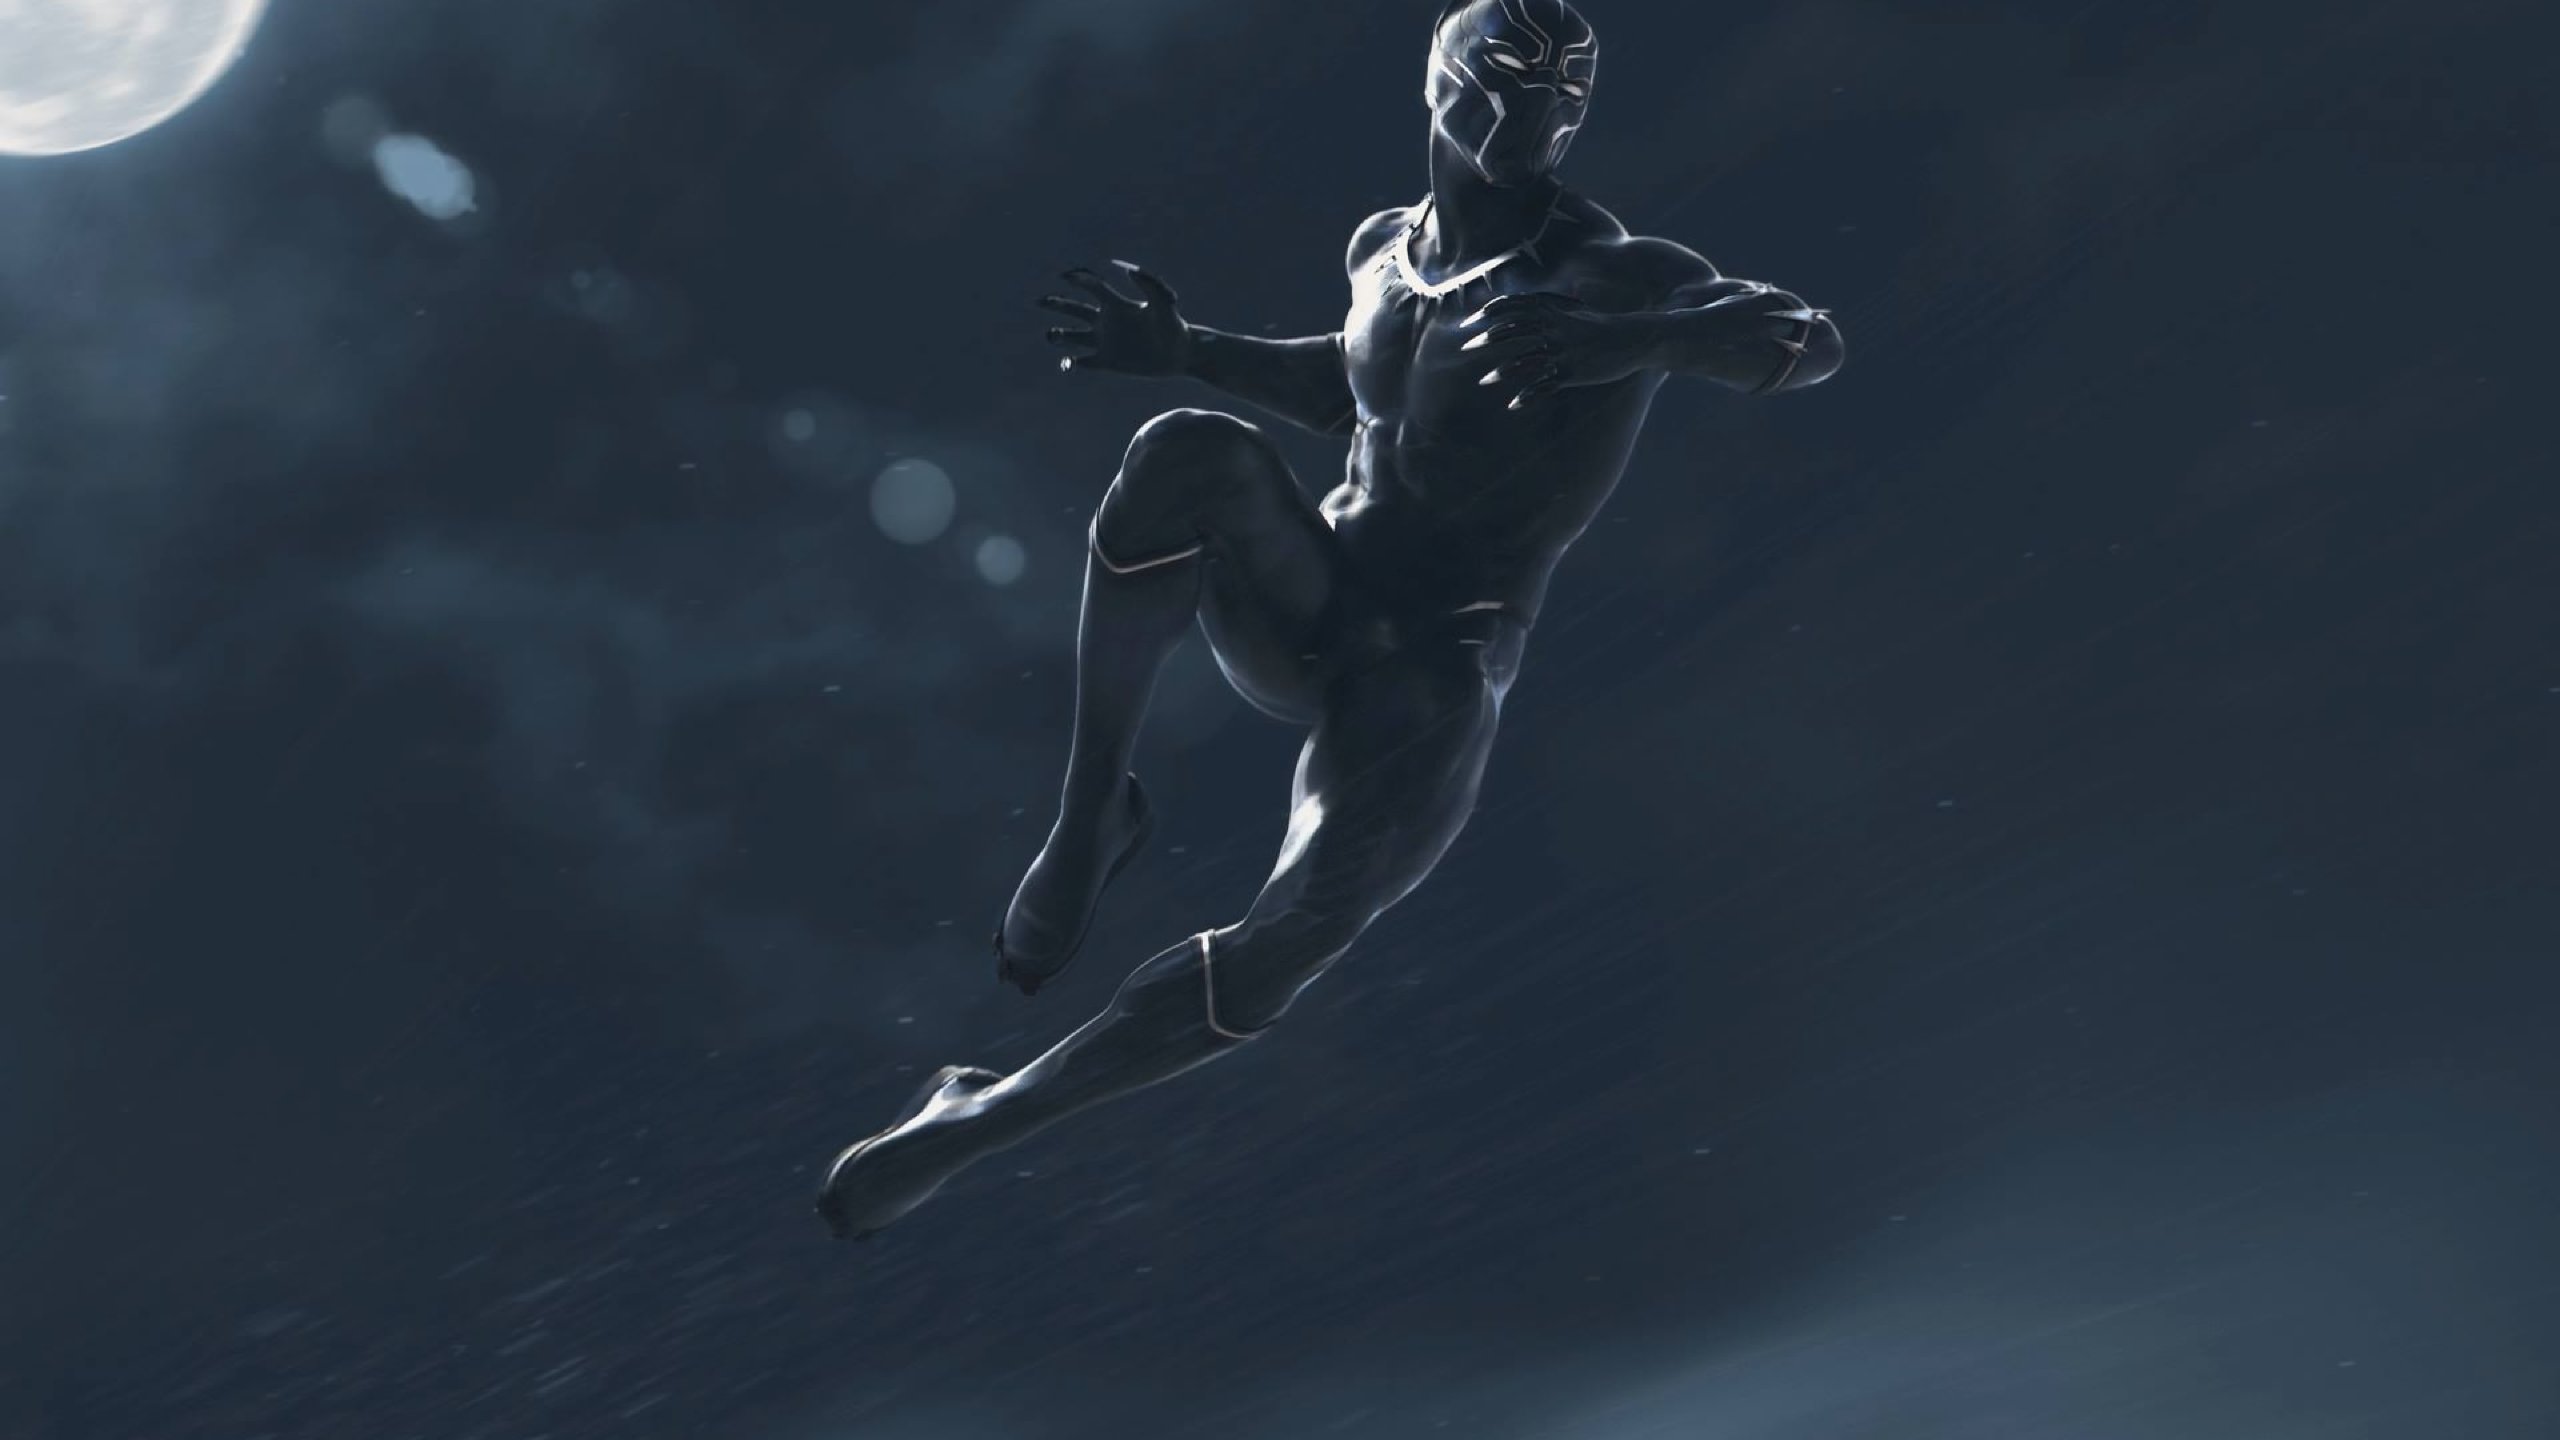 pantera negra marvel fondo de pantalla,deporte extremo,traje de neopreno,submarino